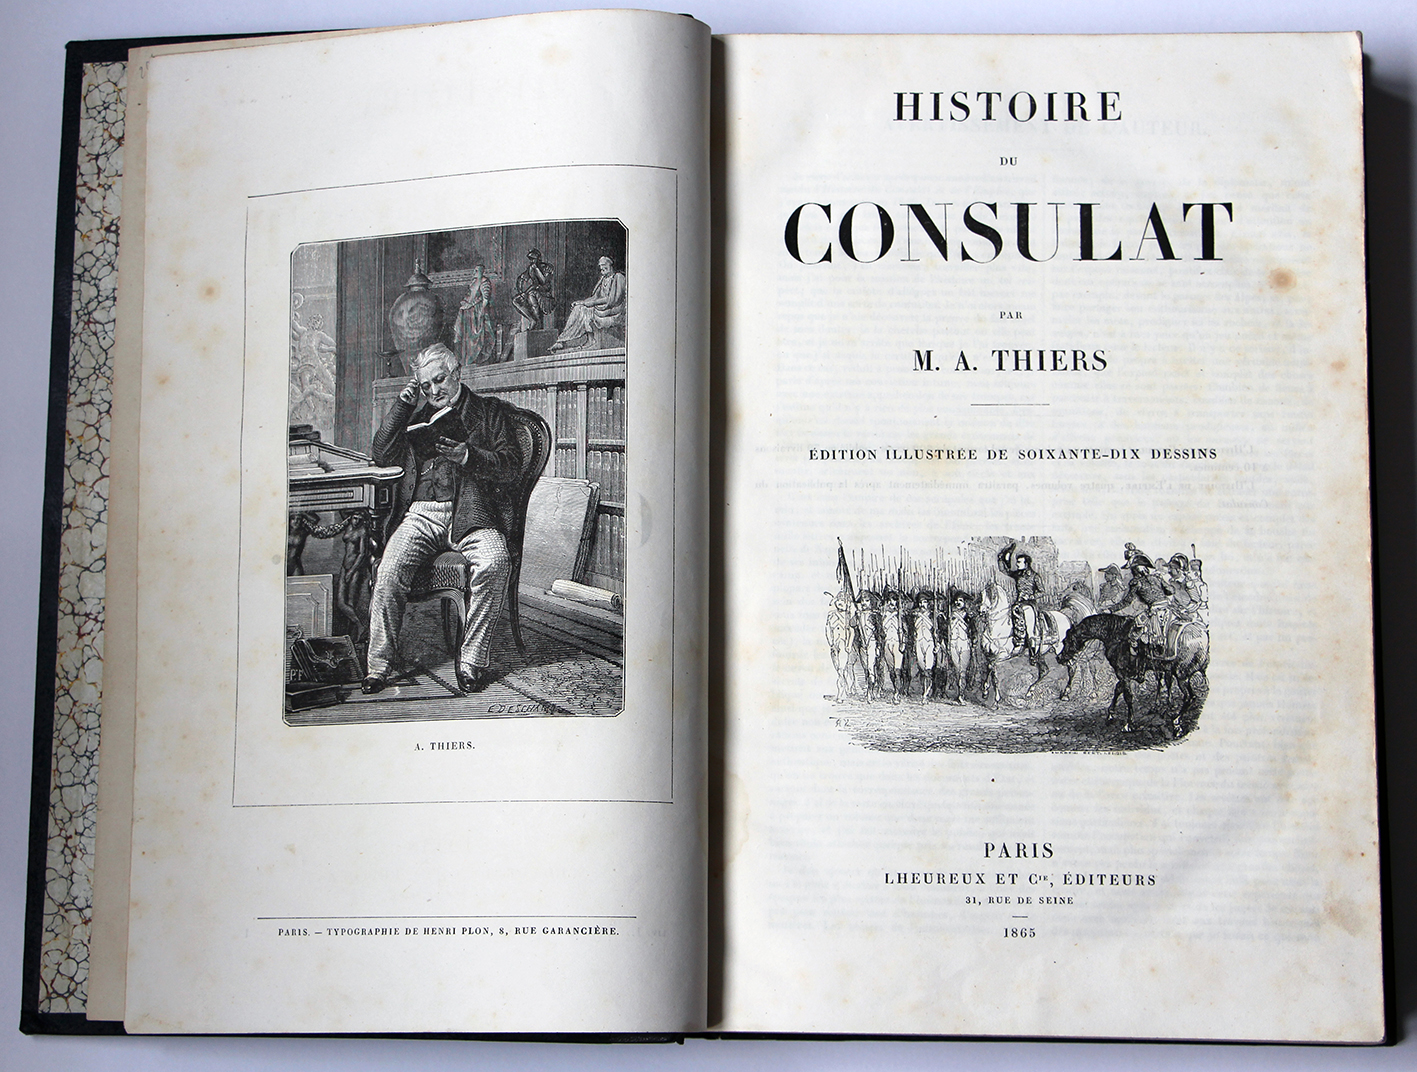 Histoire du Consulat par M.A. Thiers